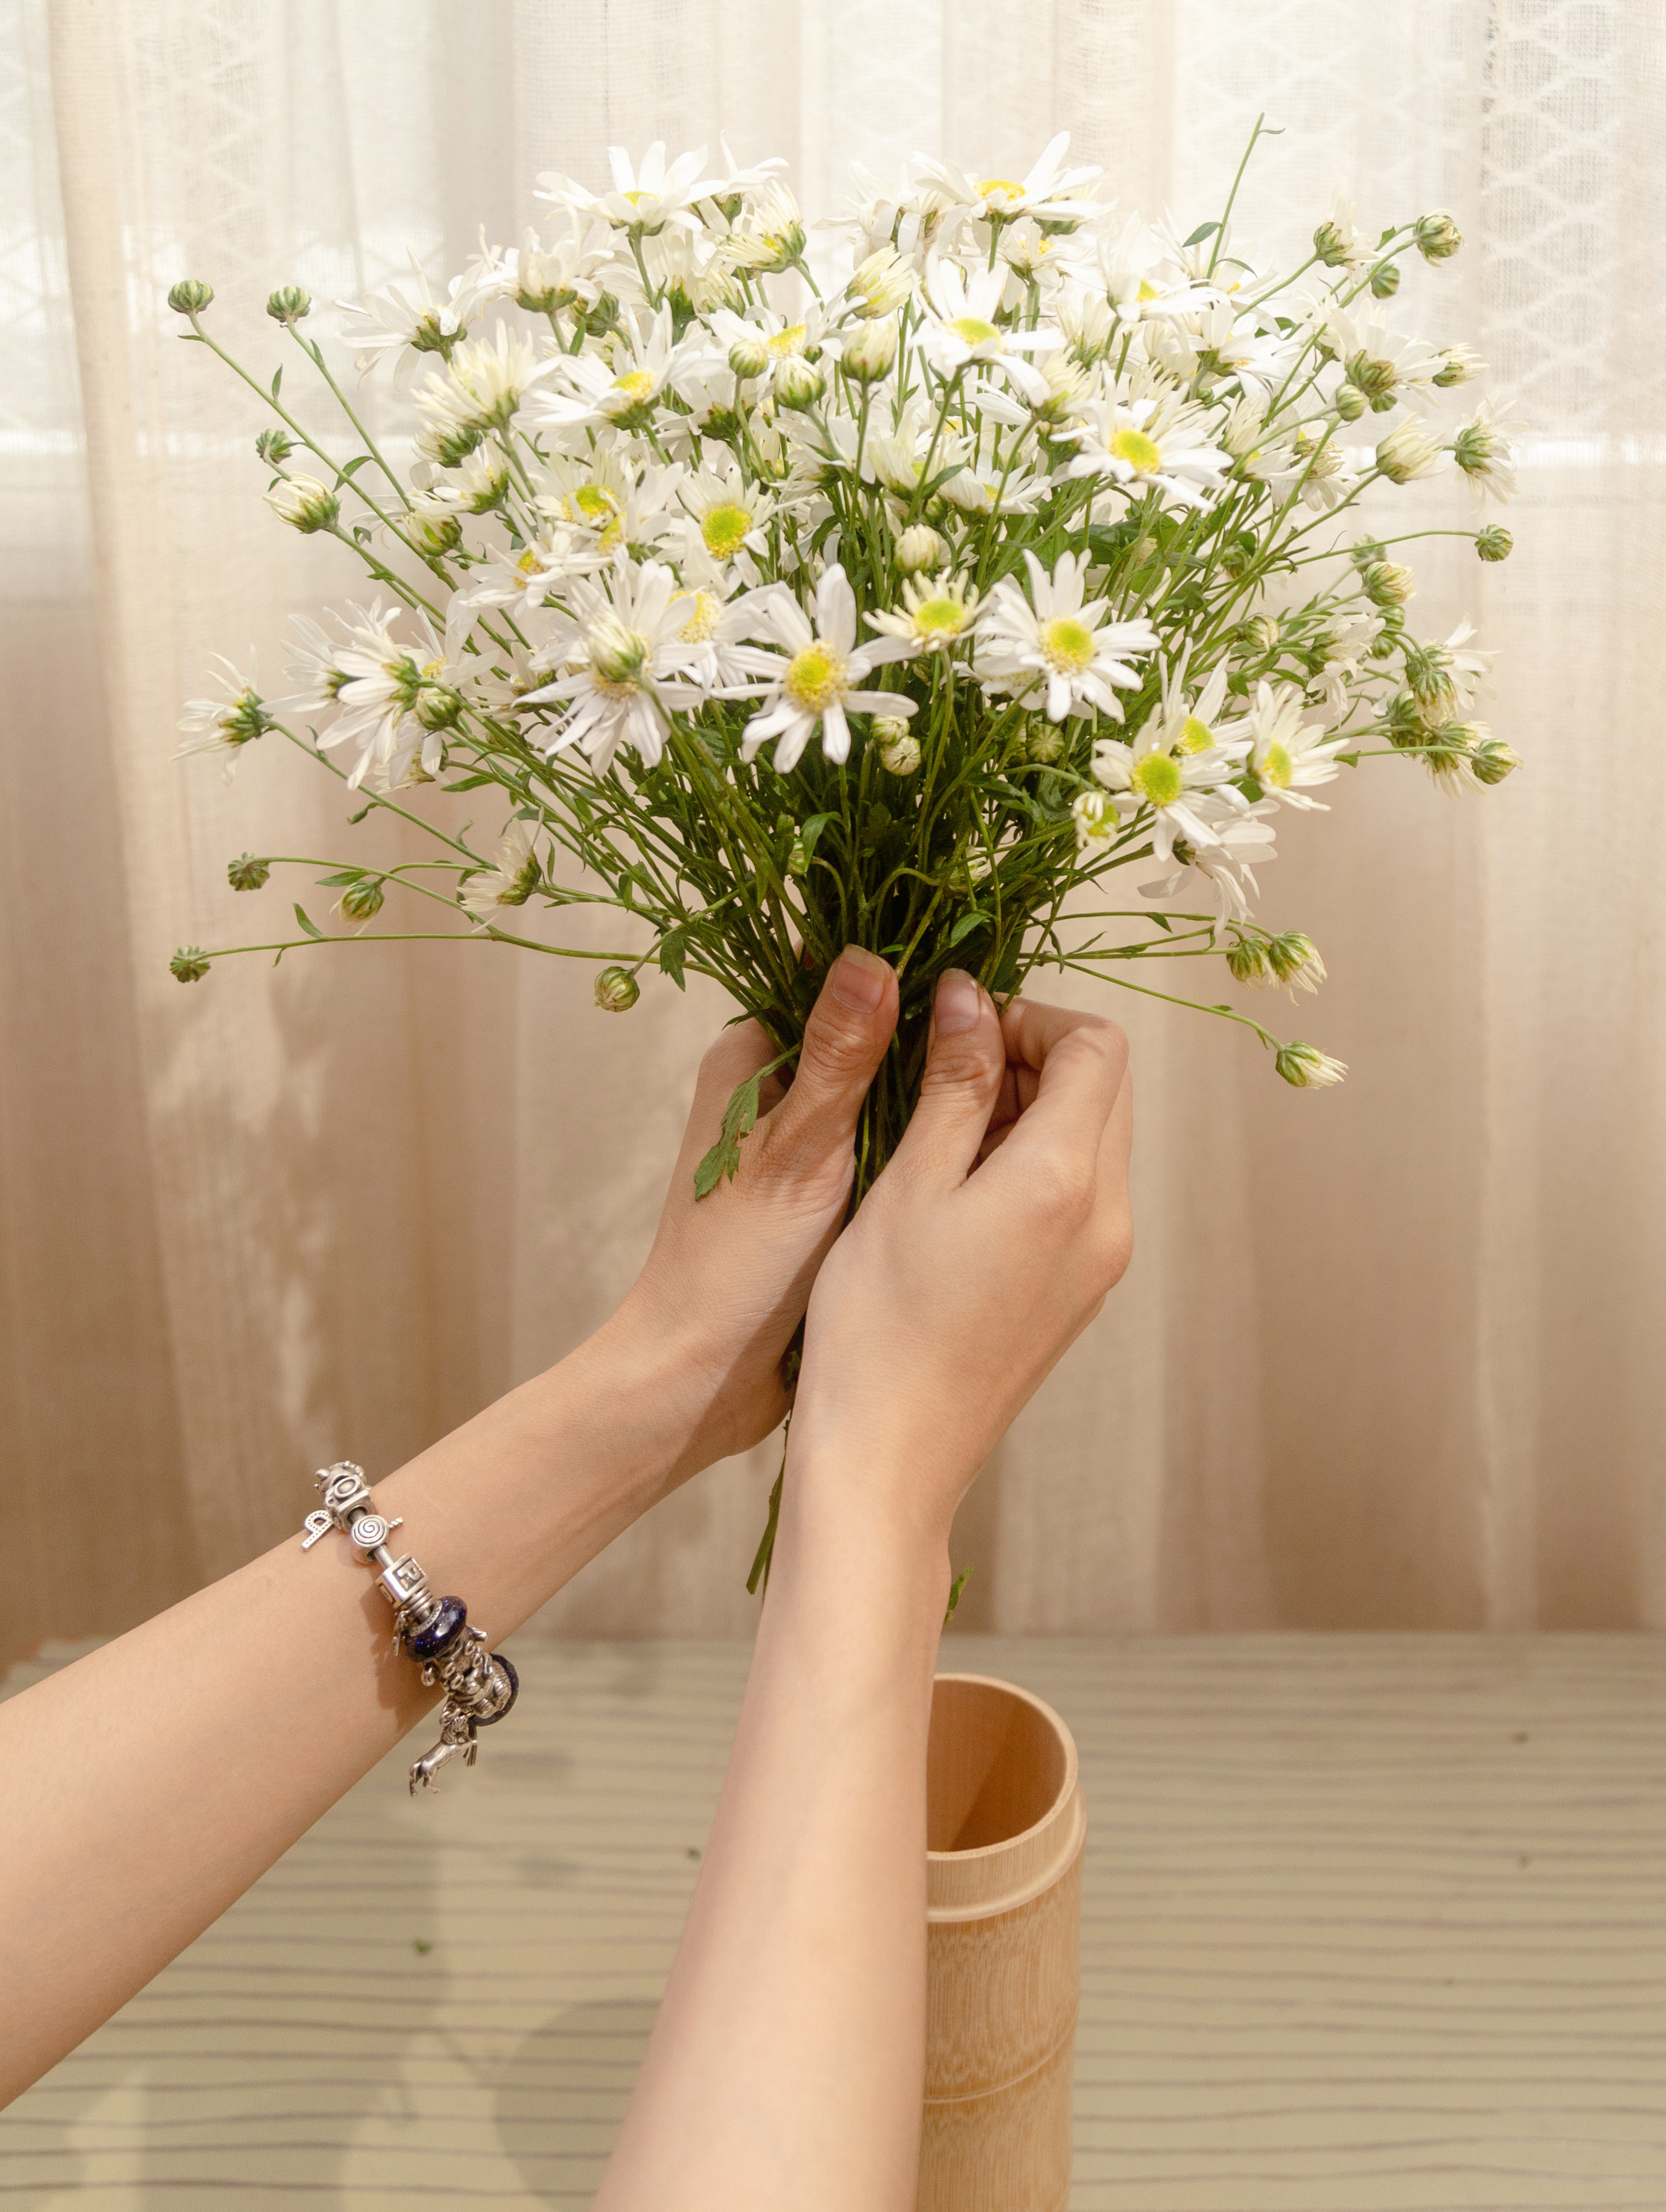 Thật đẹp và tinh tế khi cắm hoa cúc với một vài chiếc lá mỏng và một chút hoa khác. Hãy thưởng thức hình ảnh về sáng tạo và tinh tế này để có thể cải thiện không gian sống của bạn.